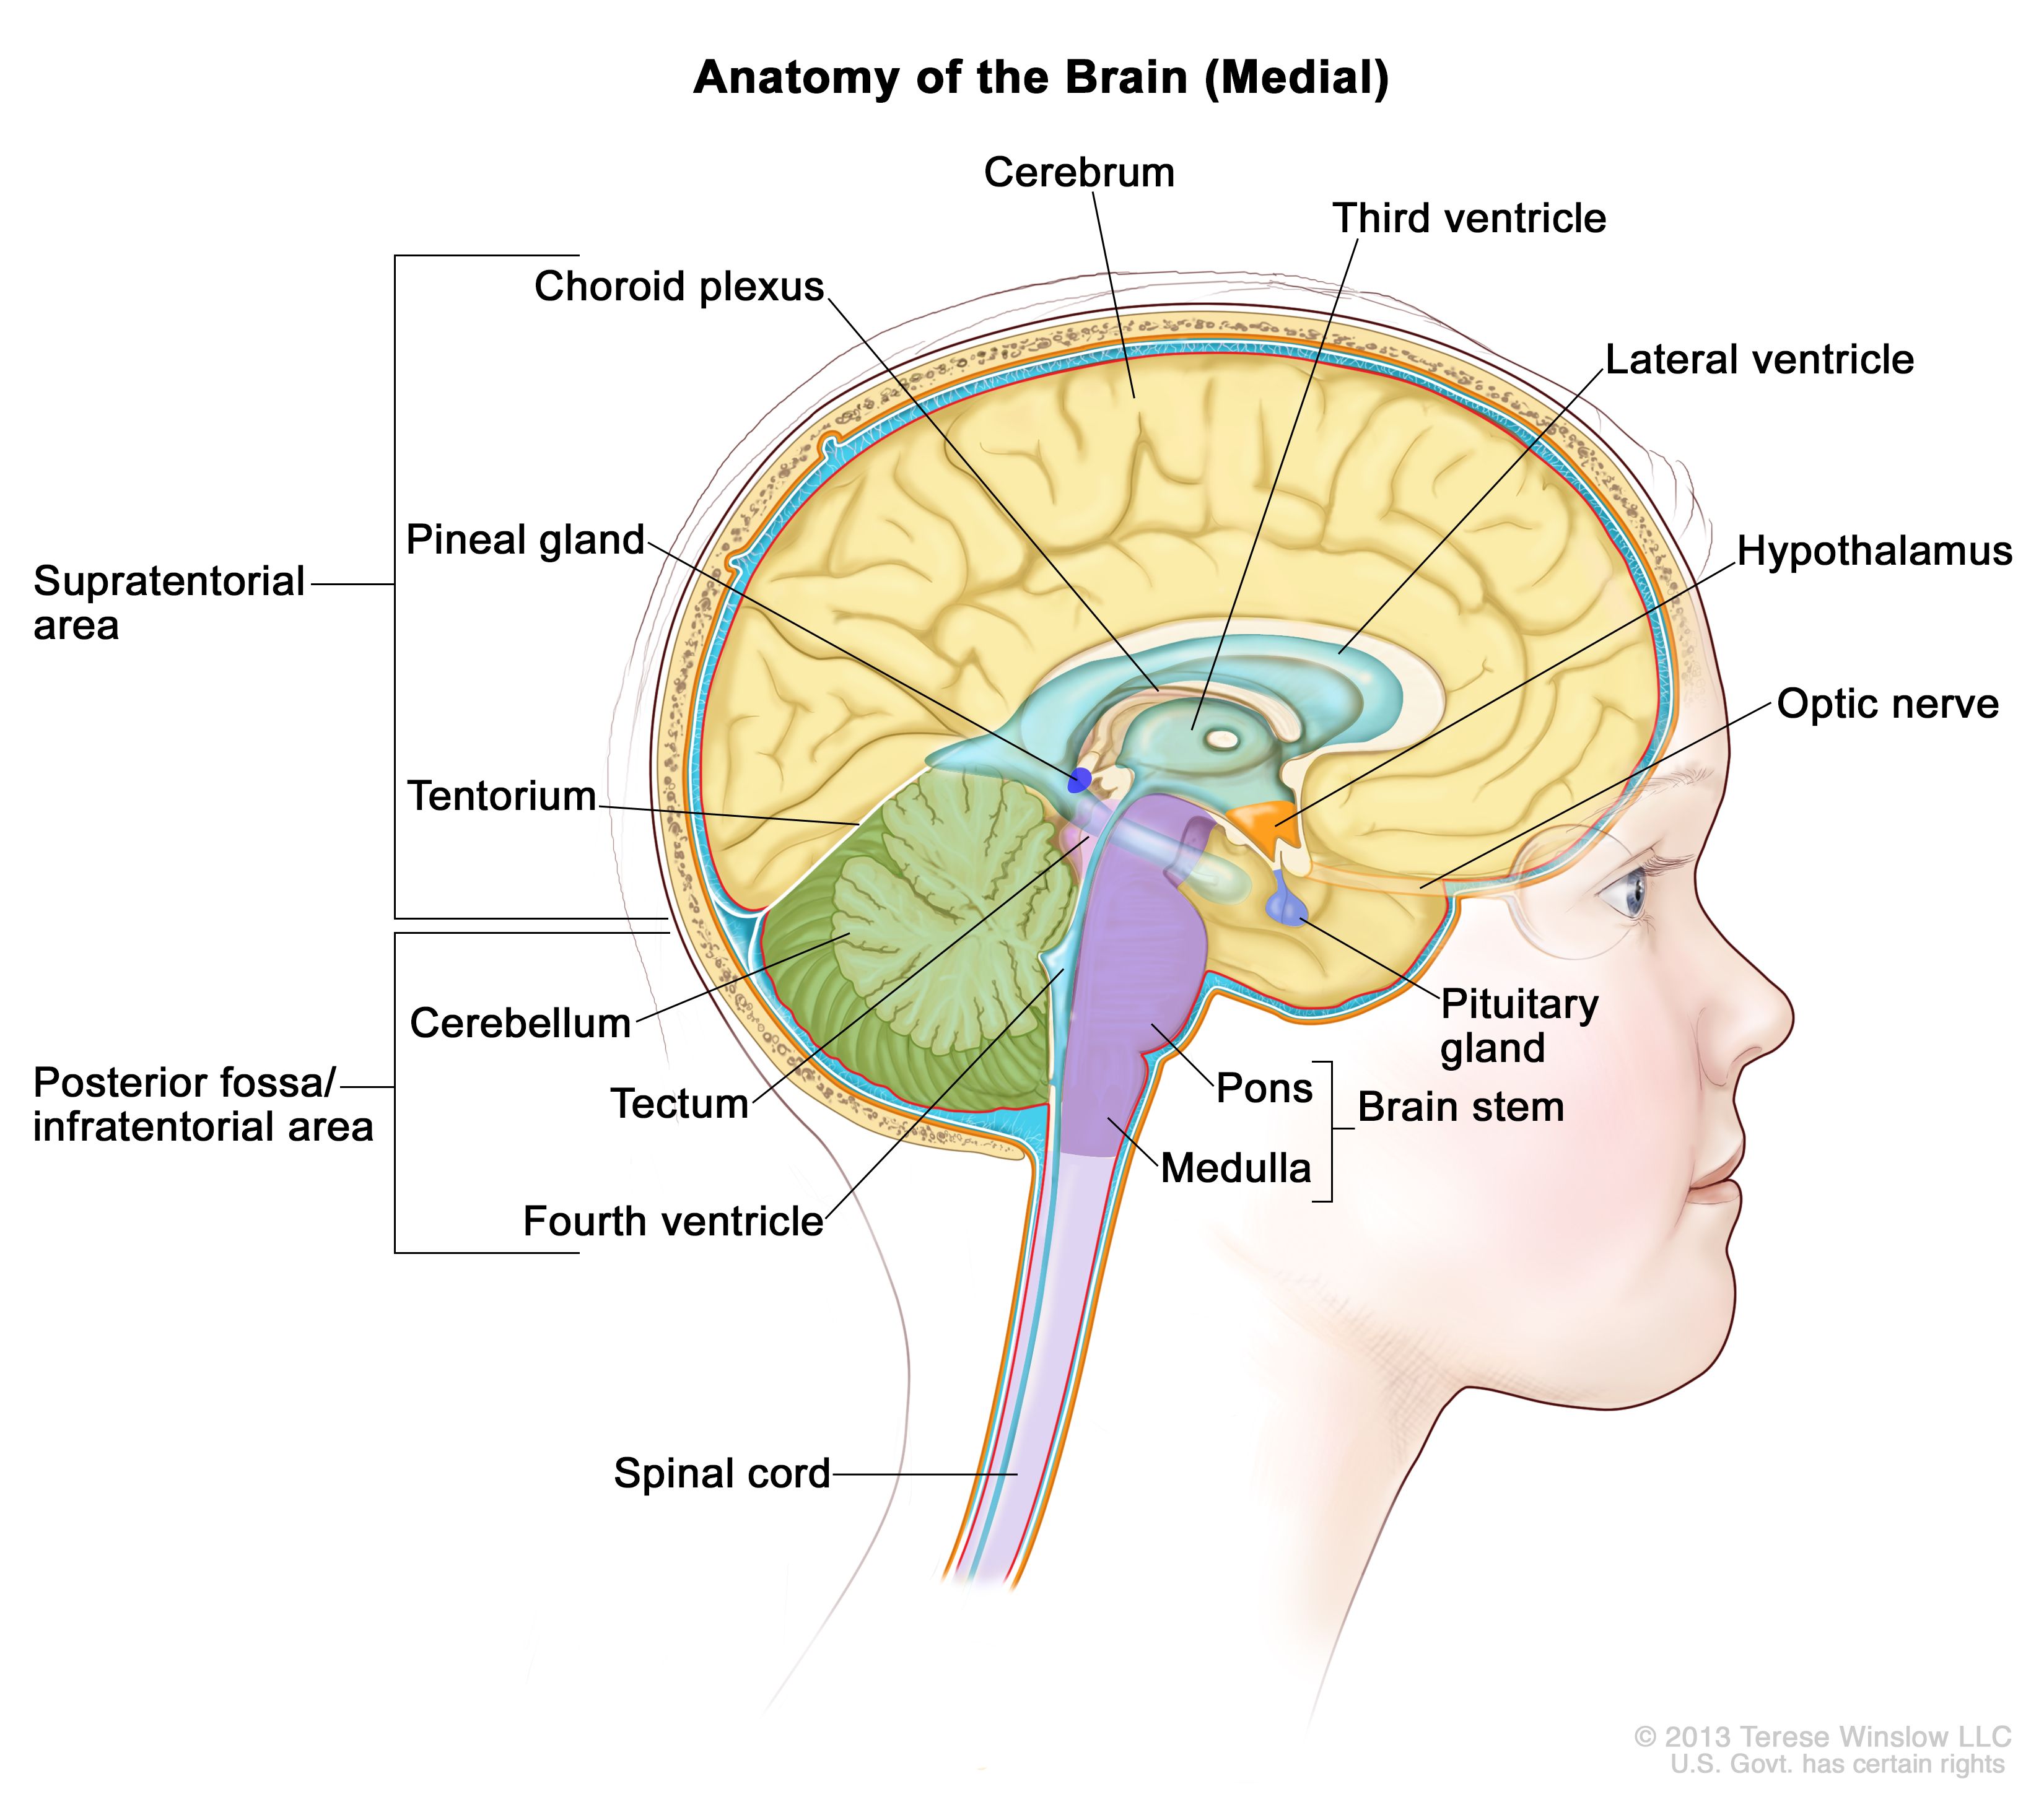 脳の内部図：テント上領域（脳の上部）および後頭蓋窩/テント下領域（脳の下部後方）を示す。テント上領域には、大脳、側脳室、第3脳室、脈絡叢、視床下部、松果体、下垂体、視神経が含まれる。後頭蓋窩/テント下領域には、小脳、視蓋、第四脳室、および脳幹（橋および髄質）が含まれる。テントおよび脊髄も示されている。